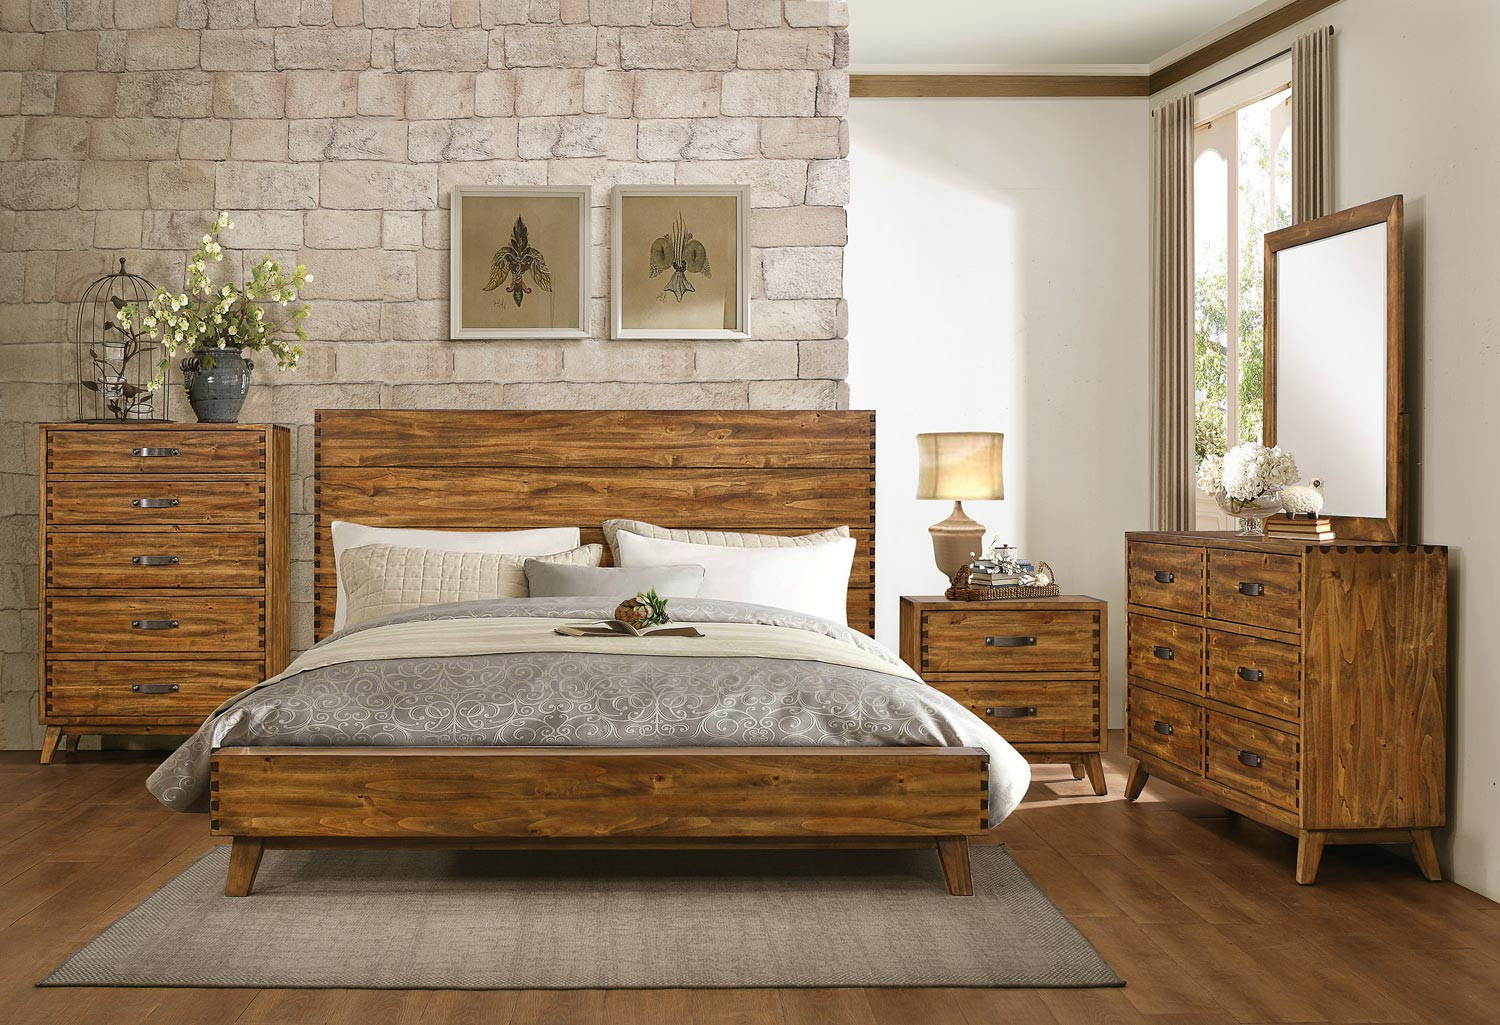 Rustic Wood Bedroom Sets
 Homelegance Sorrel Panel Platform Bedroom Set Rustic